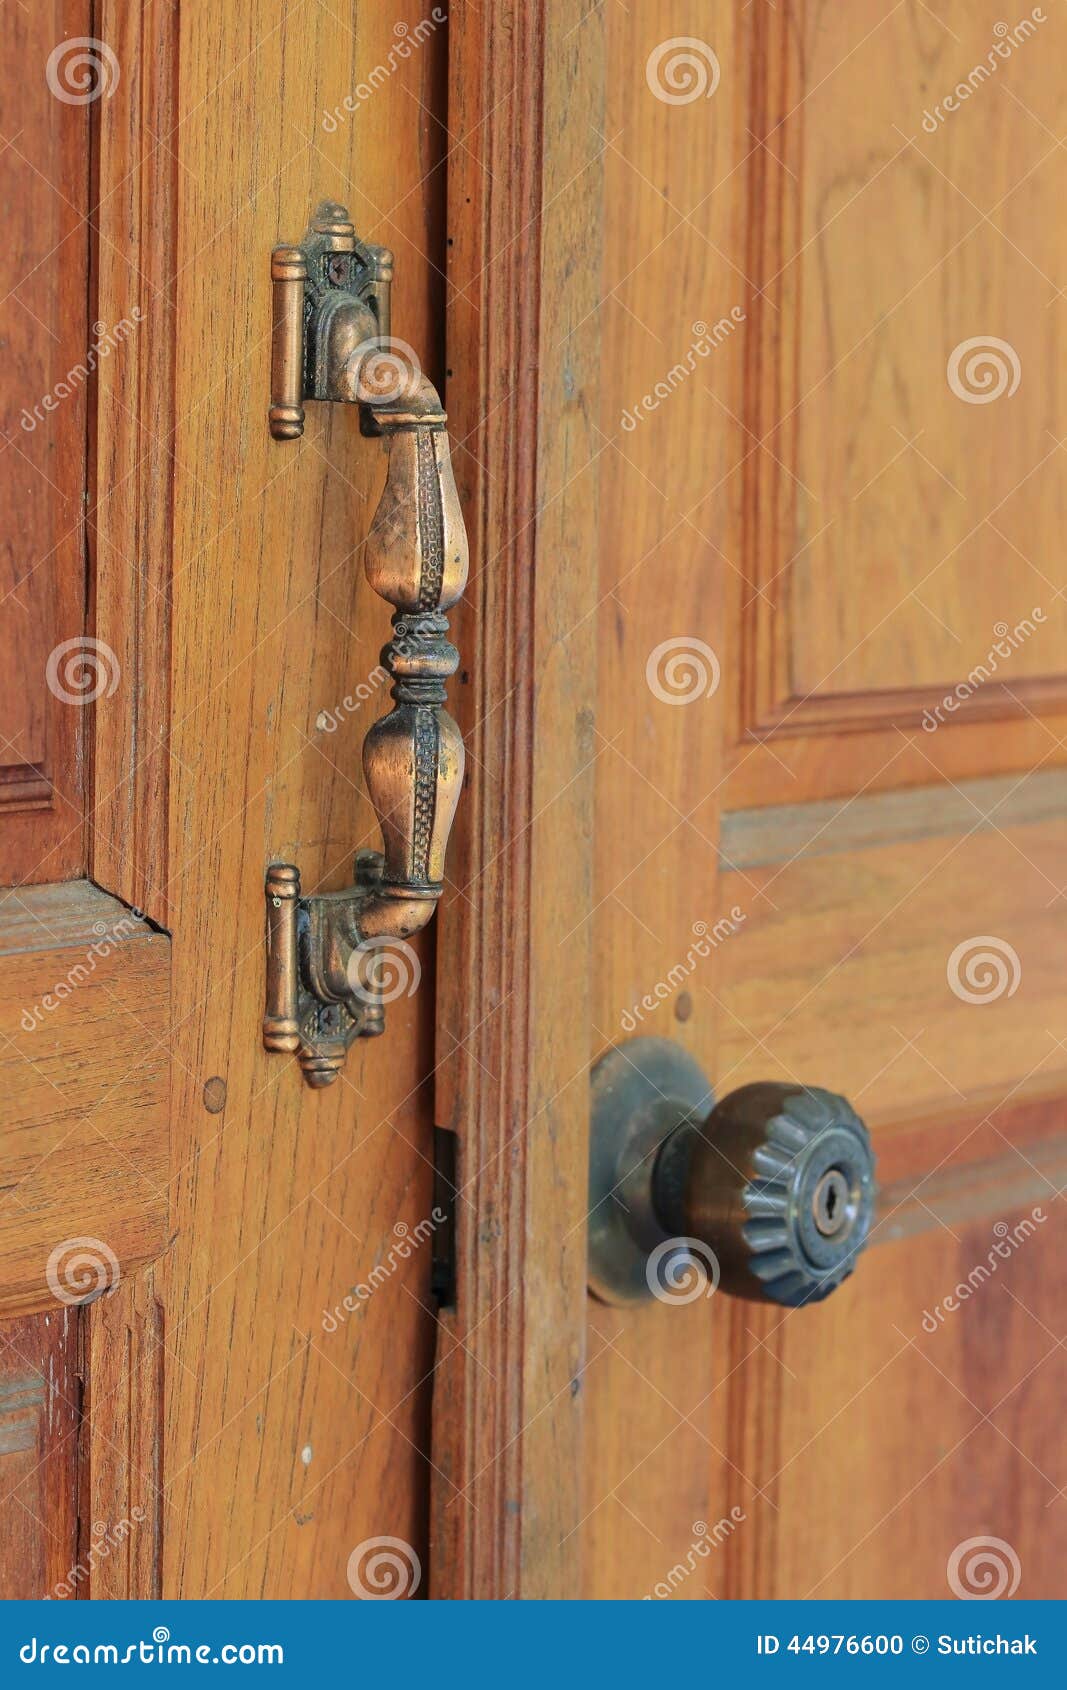 Door Handle on Brown Wood Door Stock Photo - Image of entrance, handle ...